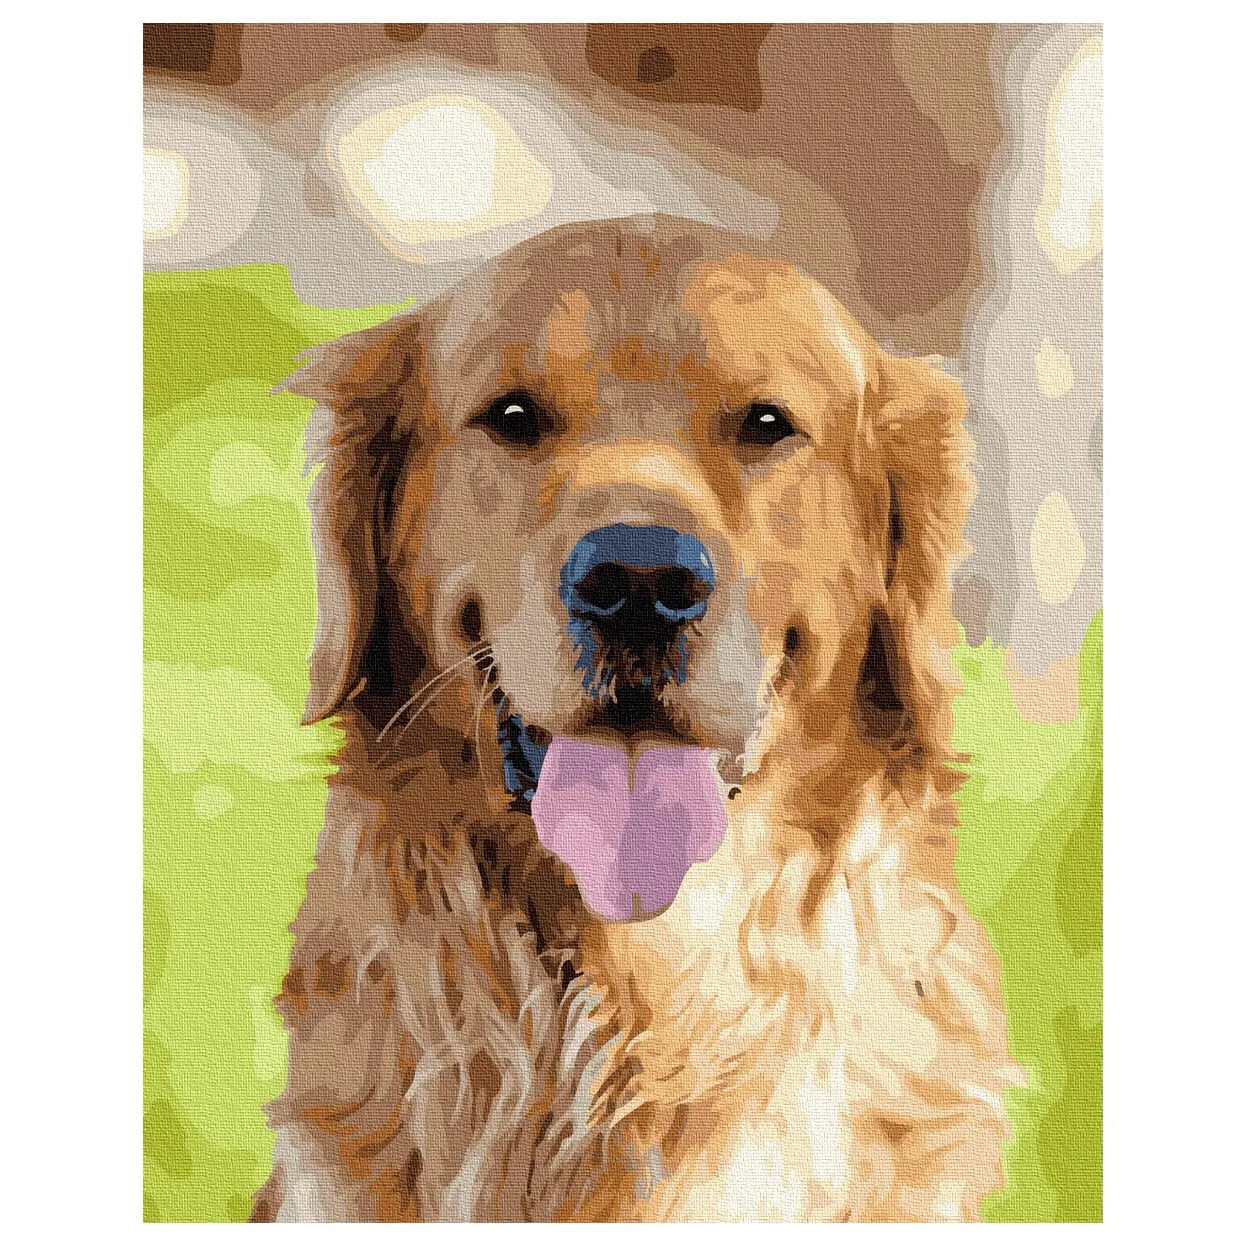 الطلاء الصبي Gt66015 الذهبي المسترد الزخرفية اللوحة بواسطة أرقام الحيوان دهان داي كبيرة الكلب لوحة زيتية قماشية